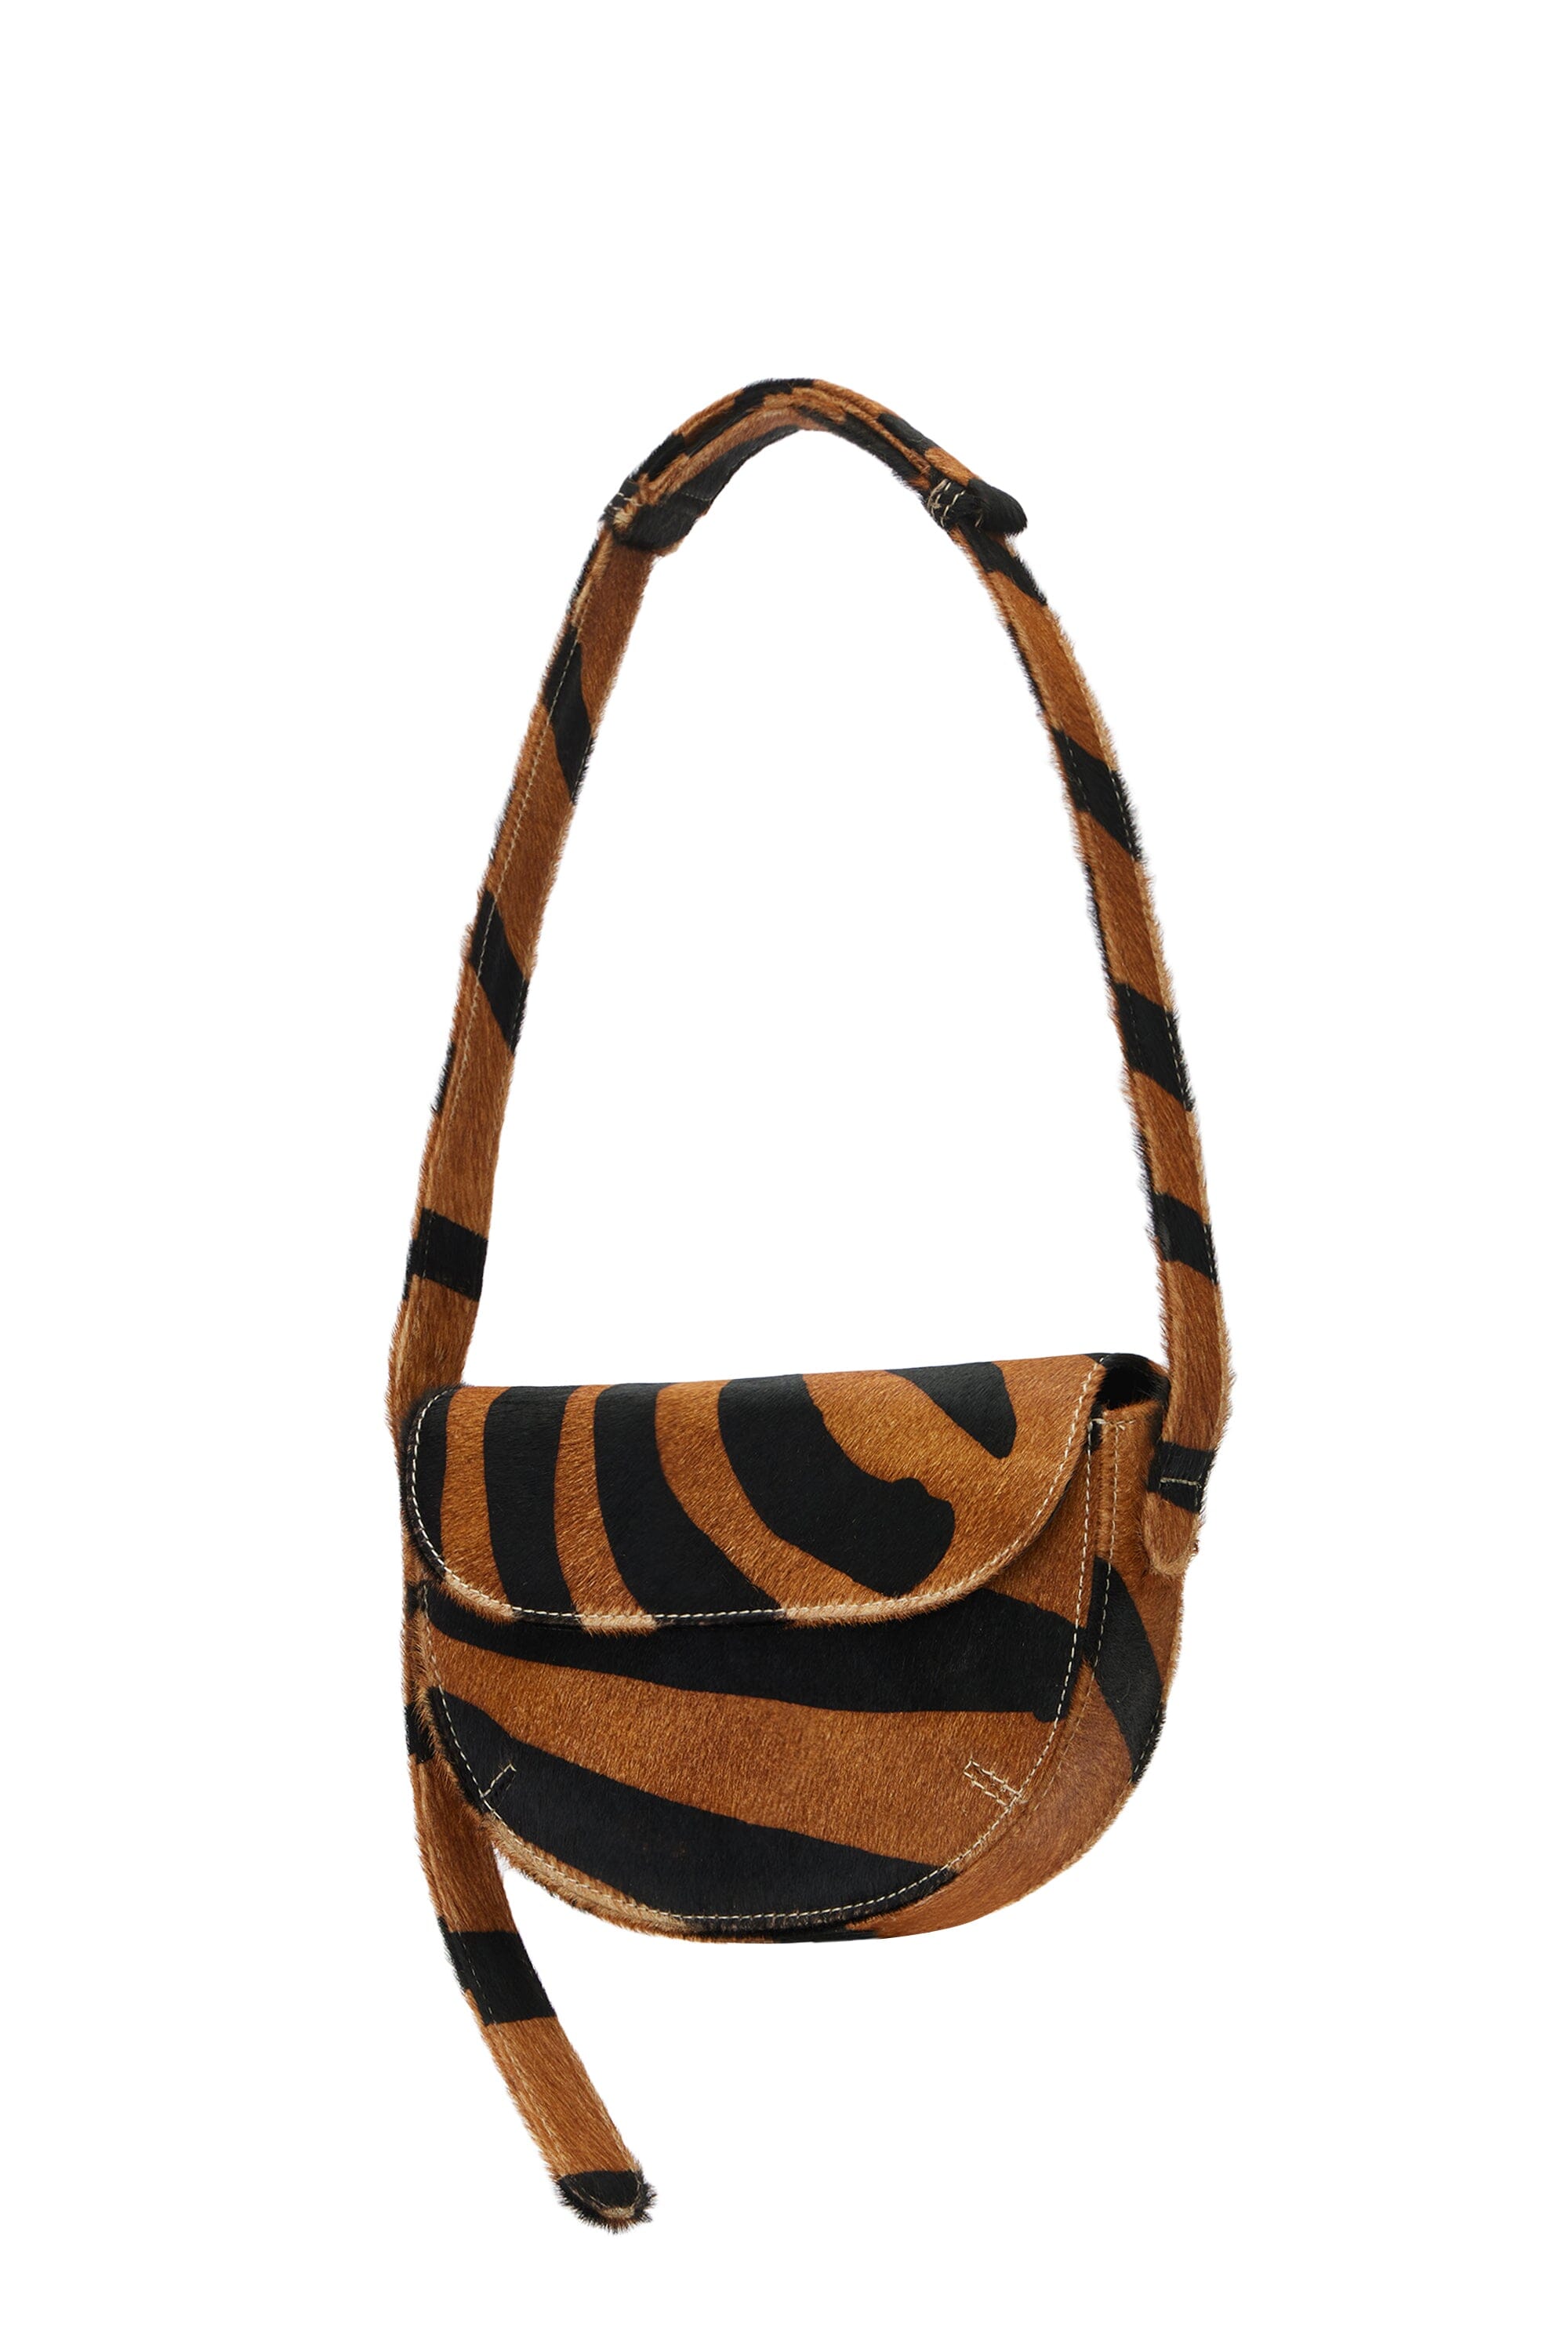 Billie Bag in Tiger